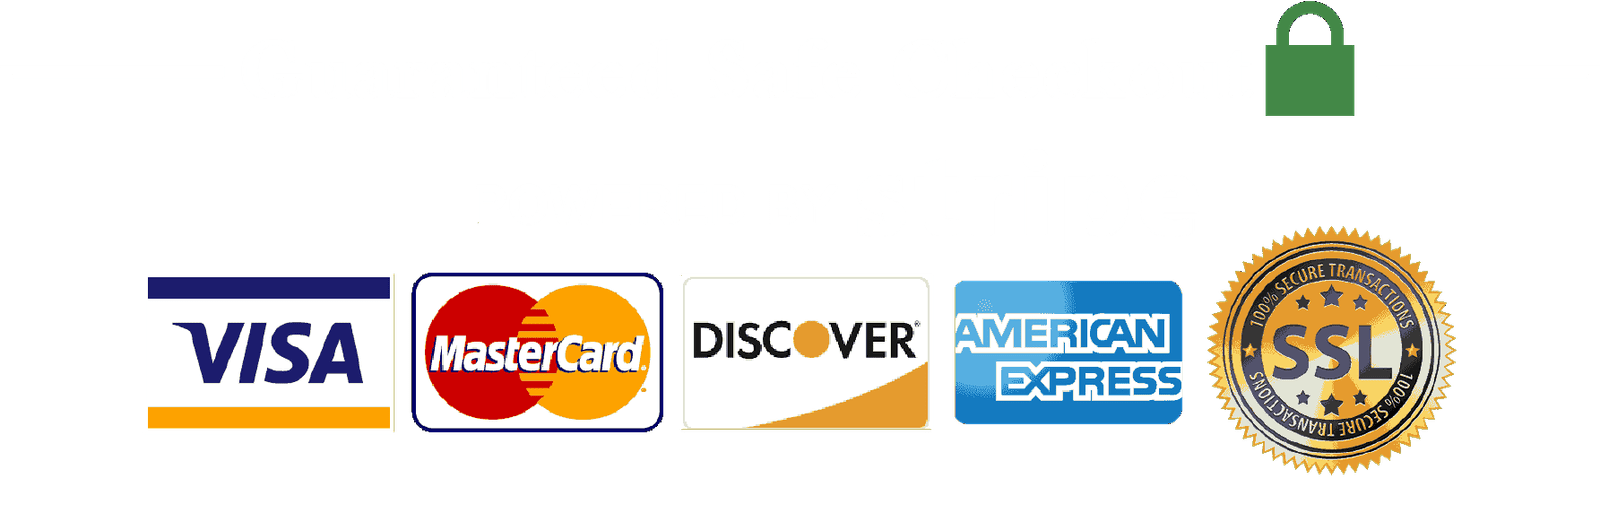 guaranteed-safe-checkout-visa-mastercard-discover-amex-american-img